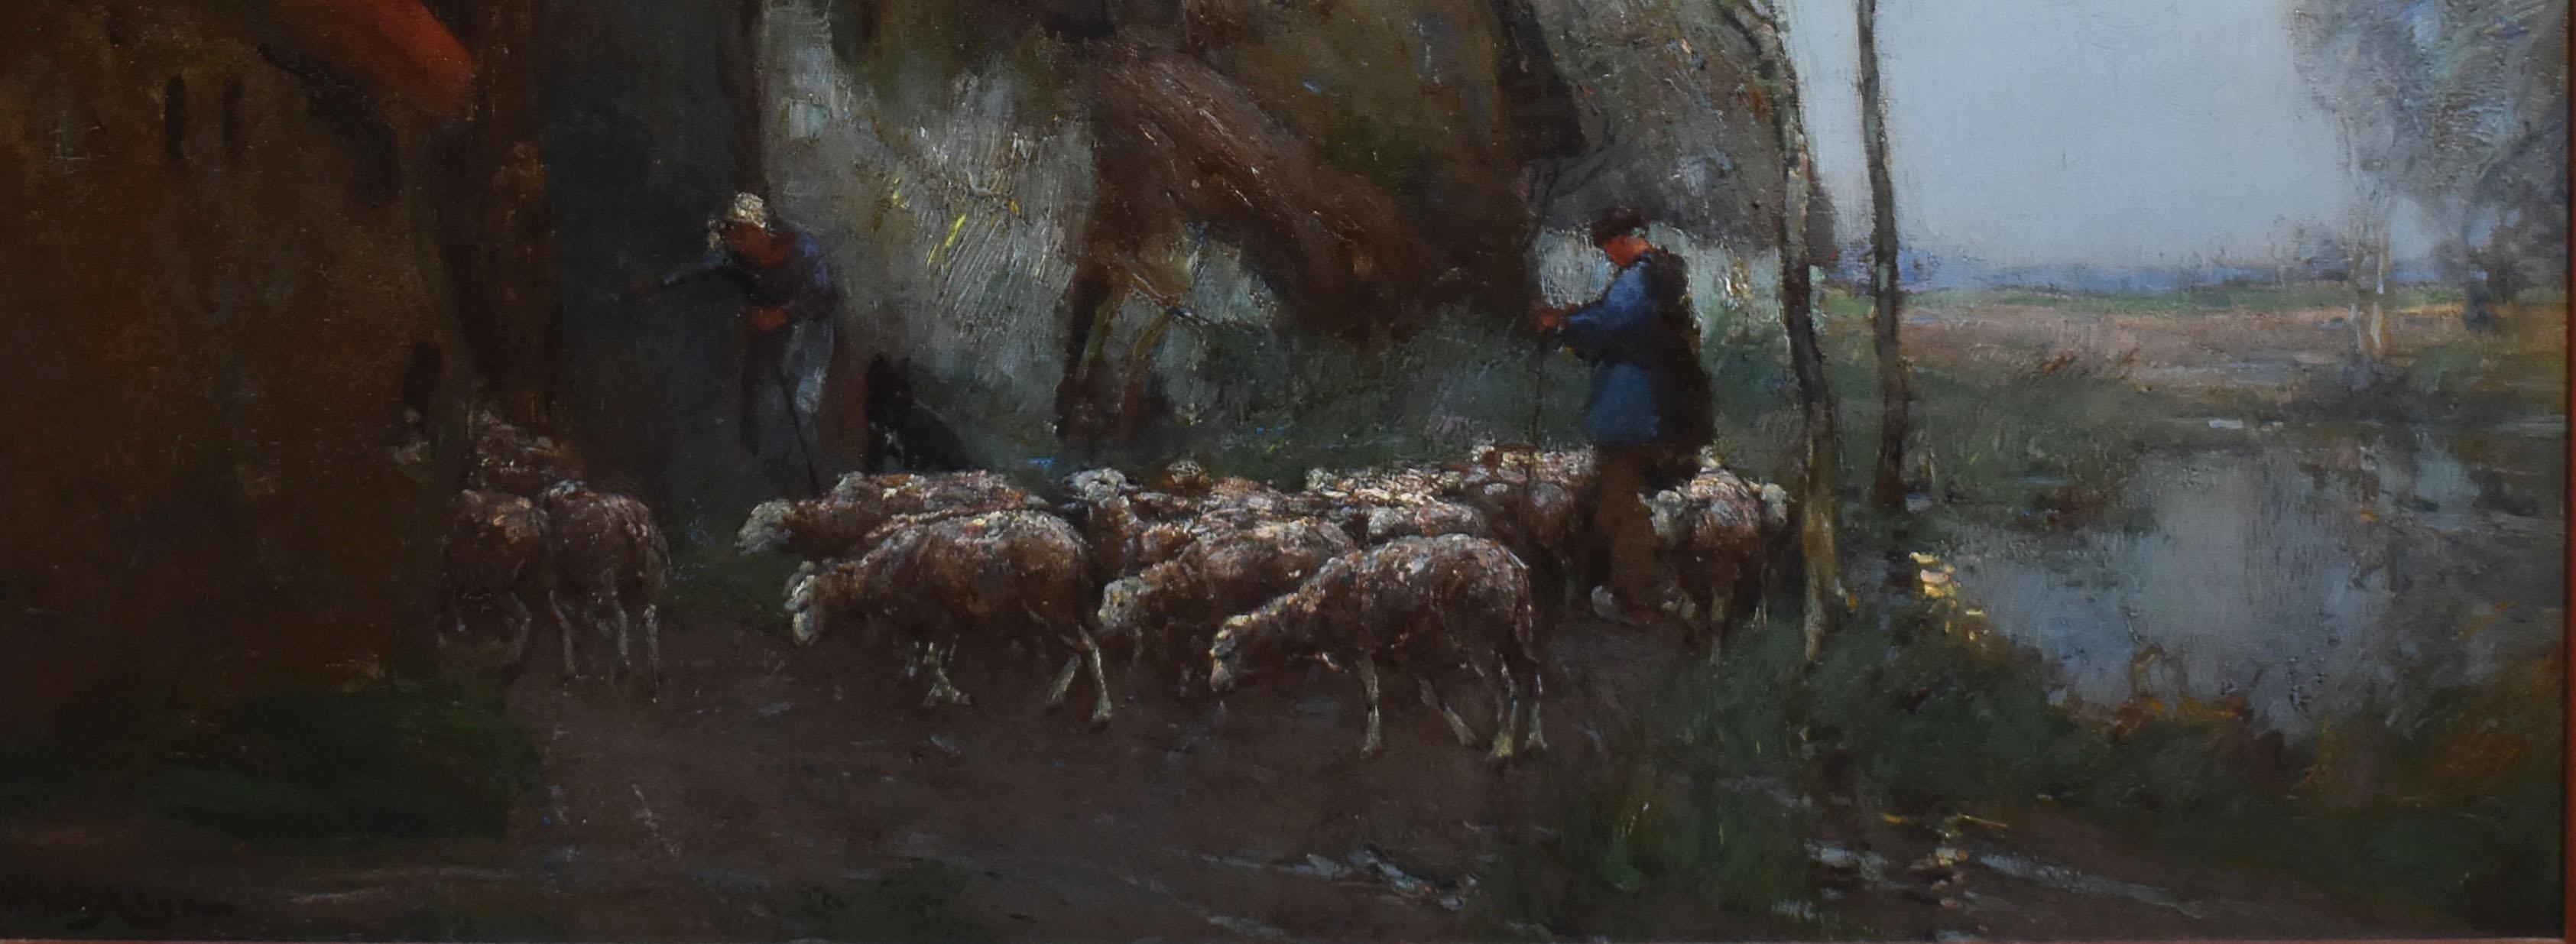 Antique Barbizon School Moonlit Sheepherding Landscape Signed Large Oil Painting 1